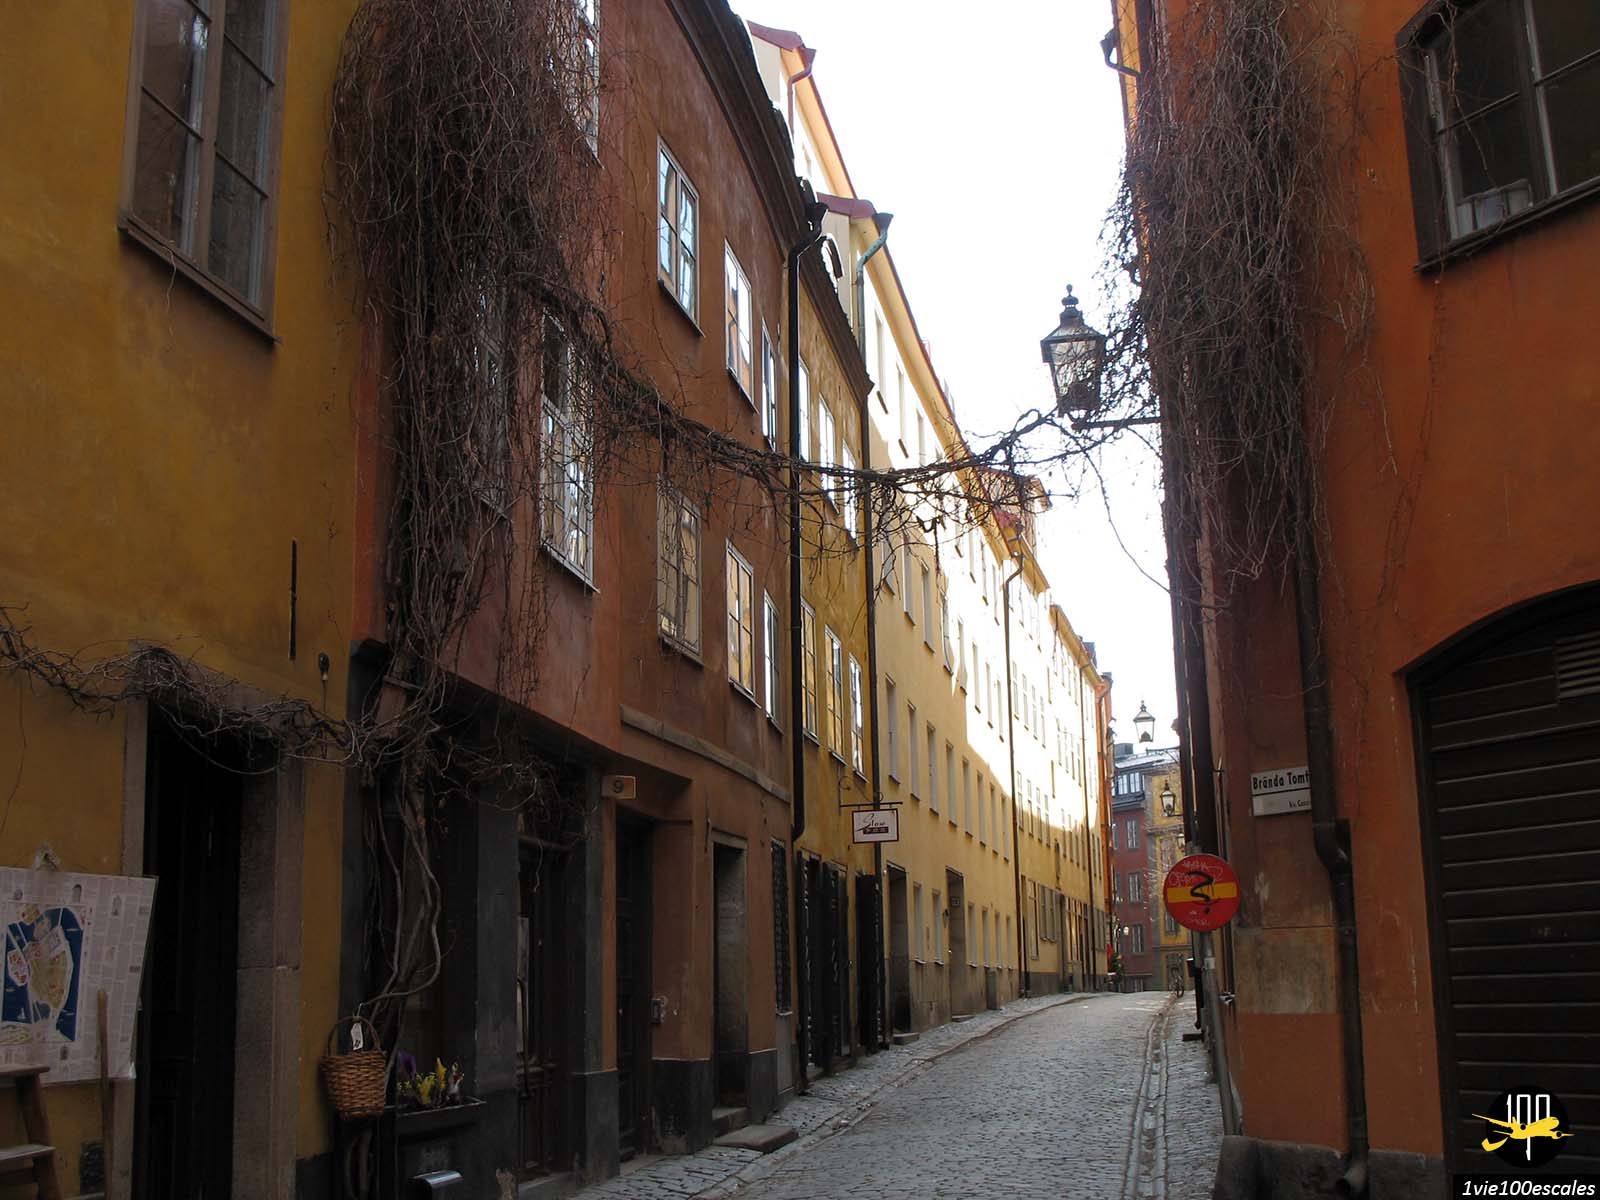 Gamla Stan ou vieille ville est la partie la plus antique de Stockholm et est parfaitement conservée